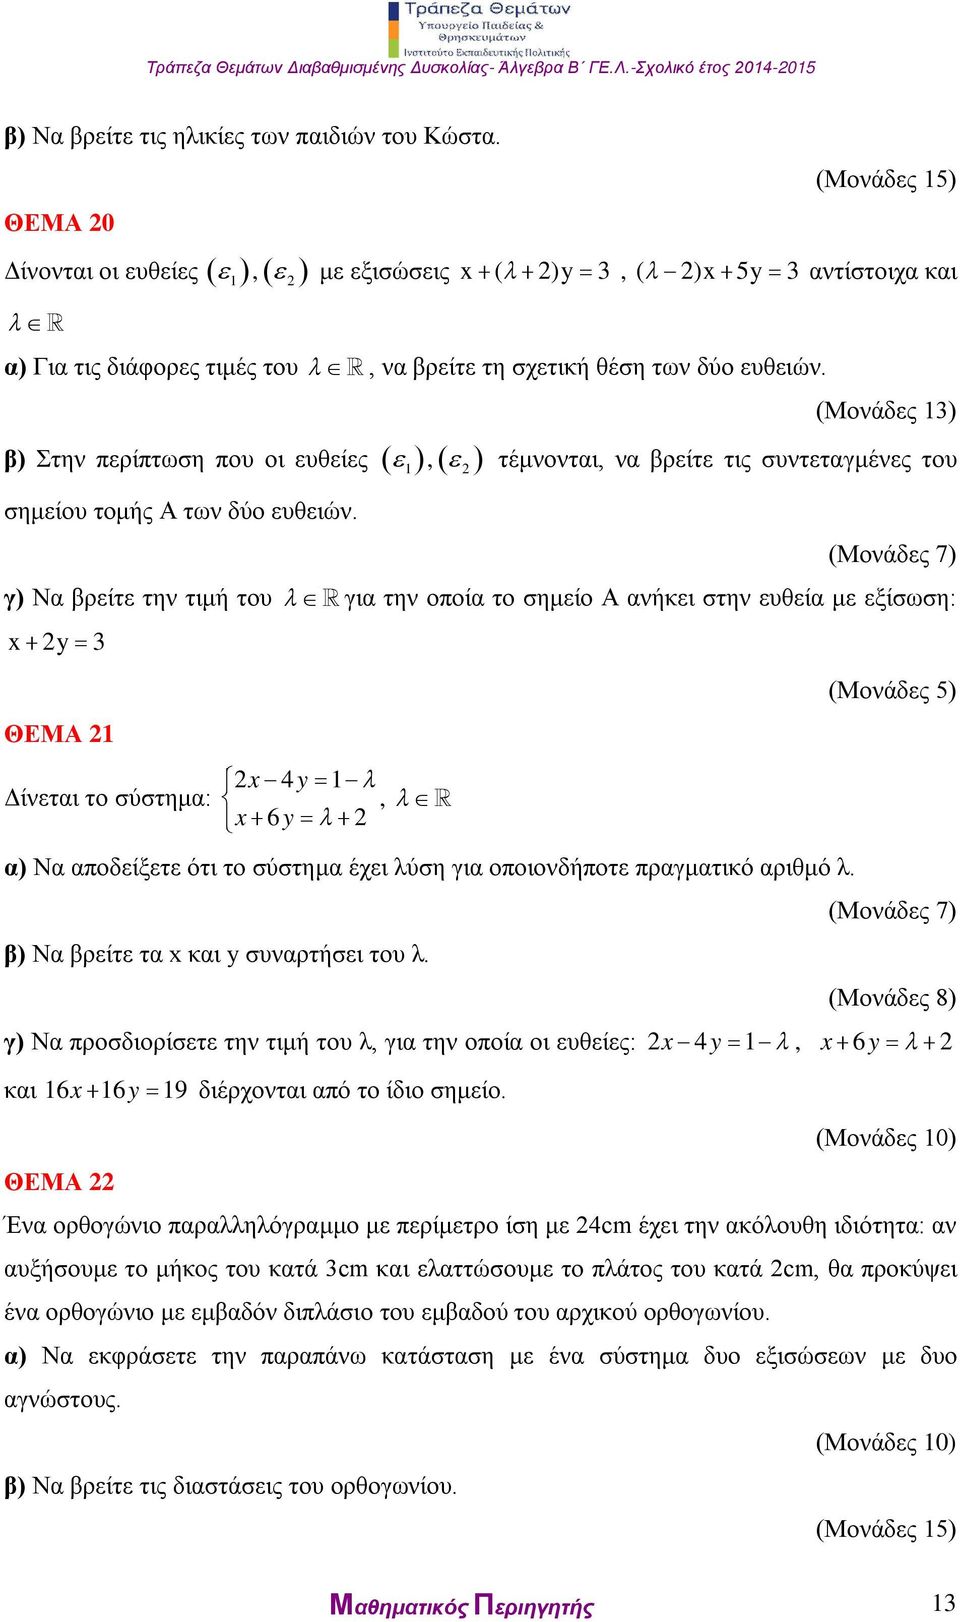 β) Στην περίπτωση που οι ευθείες 1, σημείου τομής Α των δύο ευθειών.